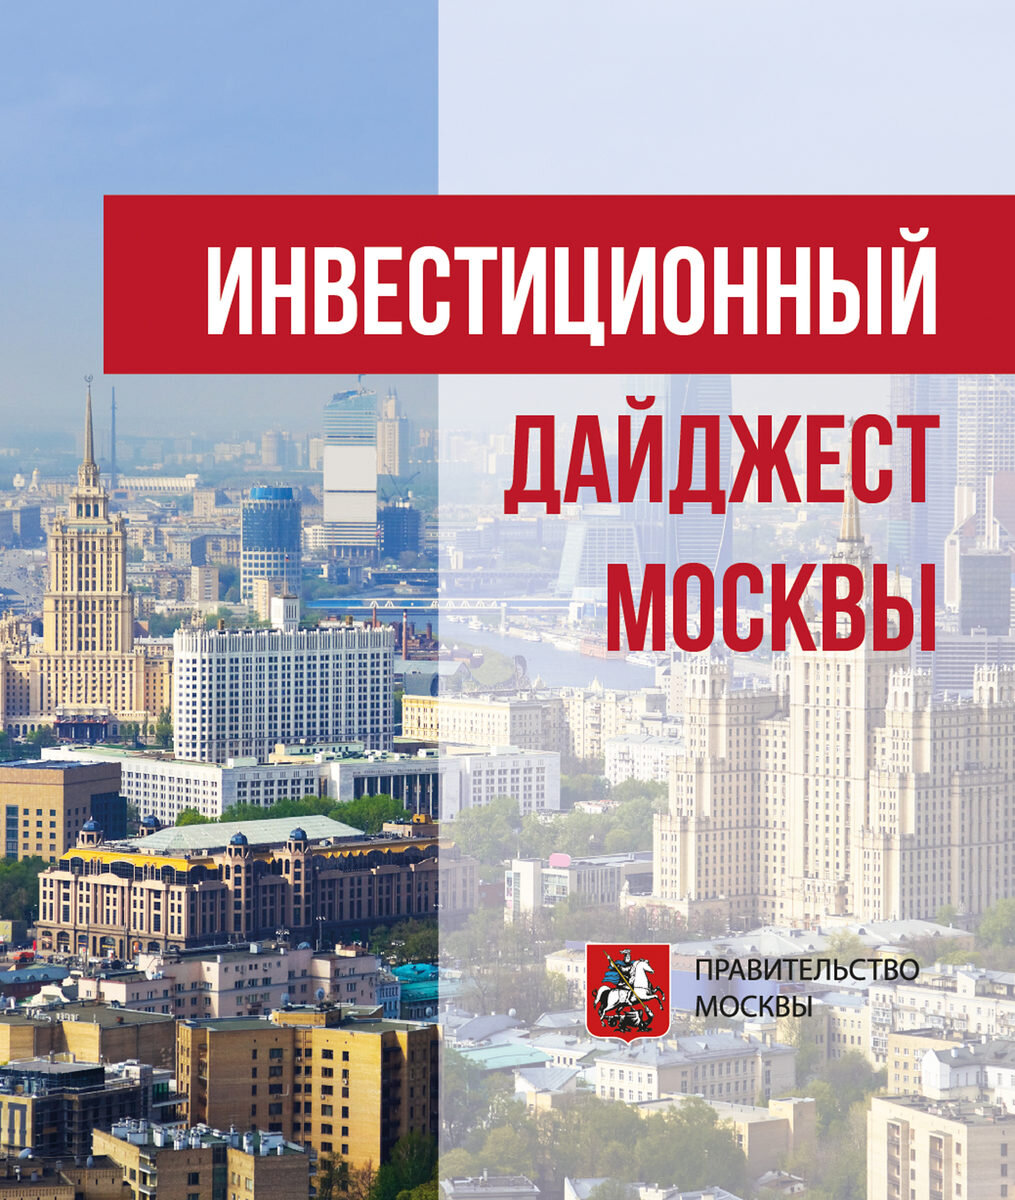 Москва заключила четвертый офсетный контракт. «Вимм-Билль-Данн» вложит не менее 2,1 млрд руб.